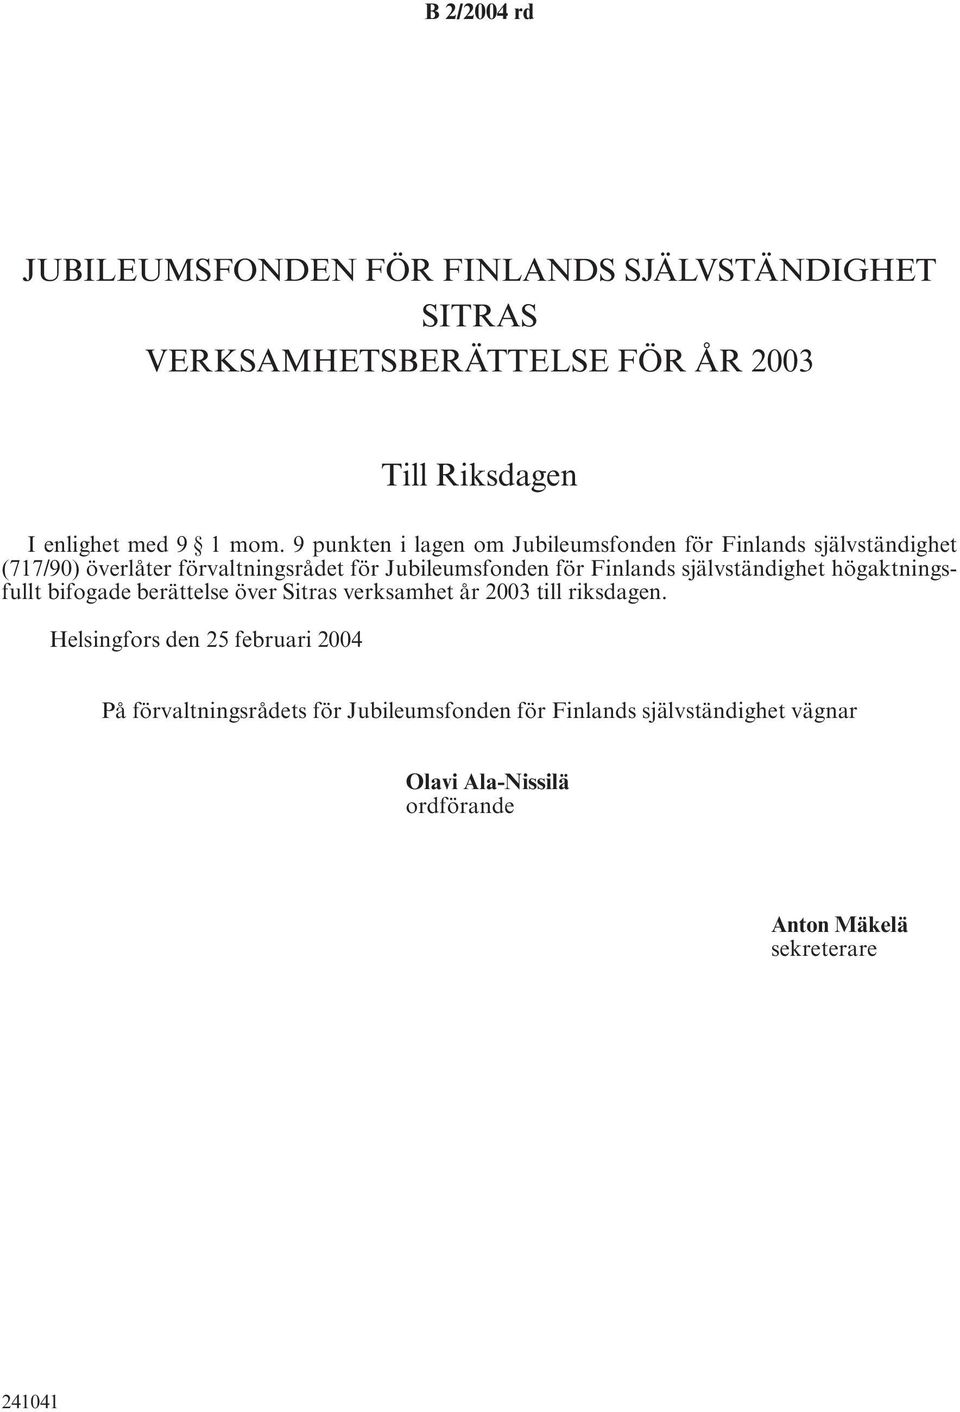 Finlands självständighet högaktningsfullt bifogade berättelse över Sitras verksamhet år 2003 till riksdagen.